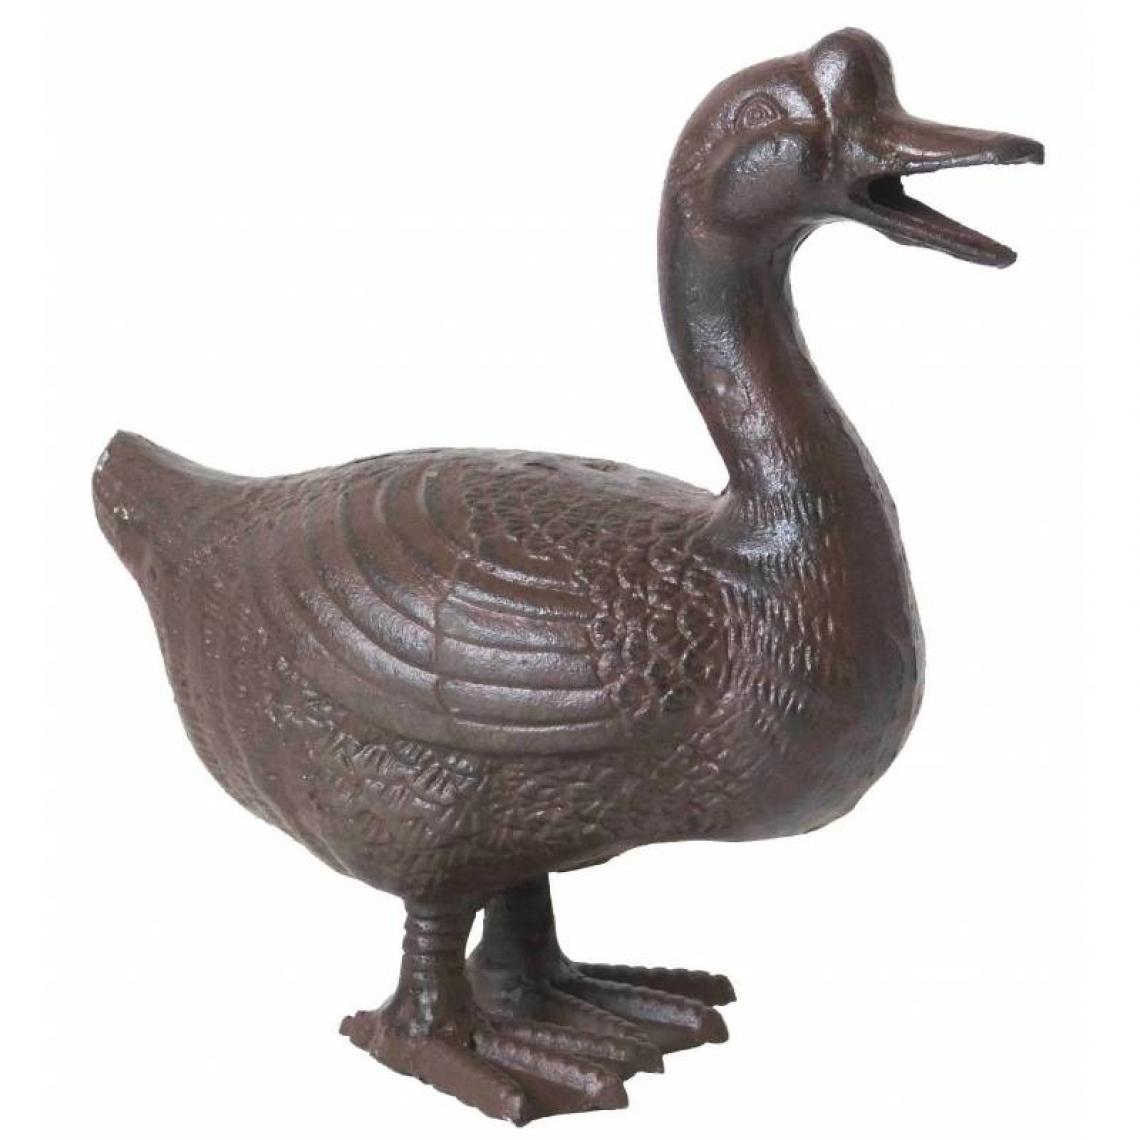 L'Héritier Du Temps - Cane ou Canard Statuette Oiseau Volatile en Fonte Marron 14x24x27cm - Petite déco d'exterieur